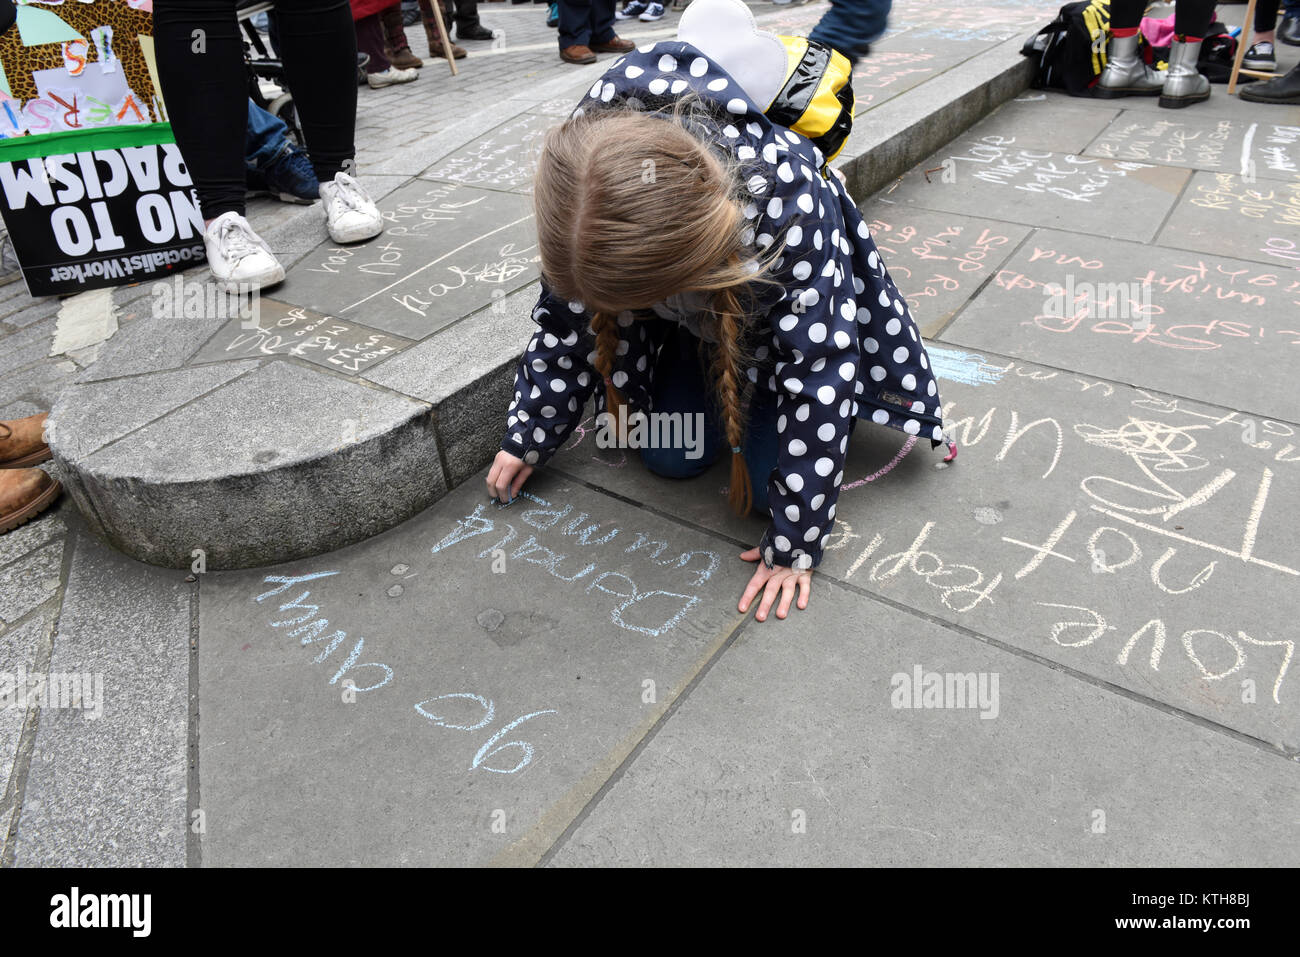 Un bambino protester è iscritto anti-Trump anti-razzismo lettura messaggio: "andare lontano Donald Trump' sul marciapiede durante l'ONU Anti-Racism giorno a Londra, Regno Unito Foto Stock